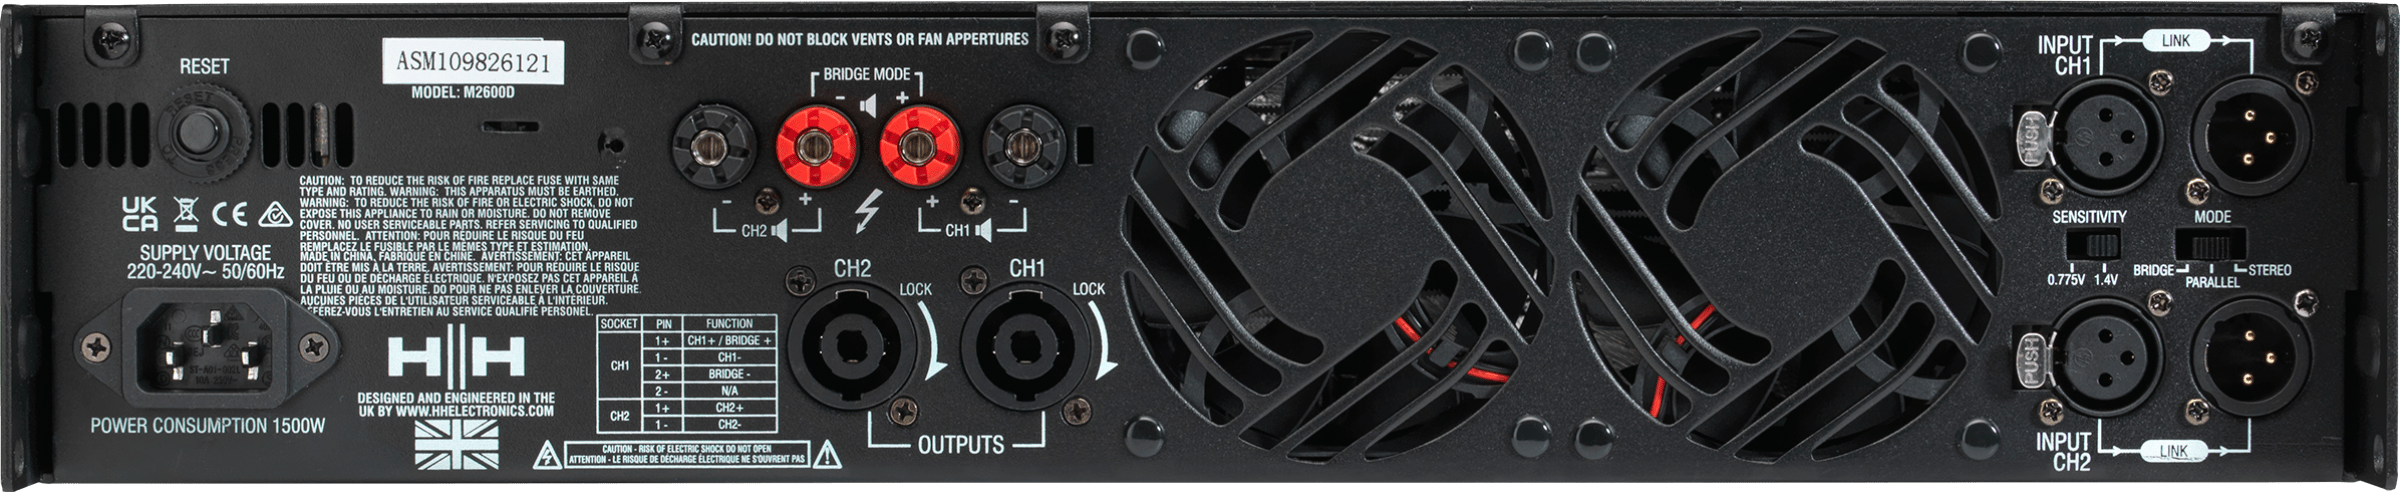 HH Electronics M-2600D 2 x 2600W Power Amplifier, 4/8 Ohms